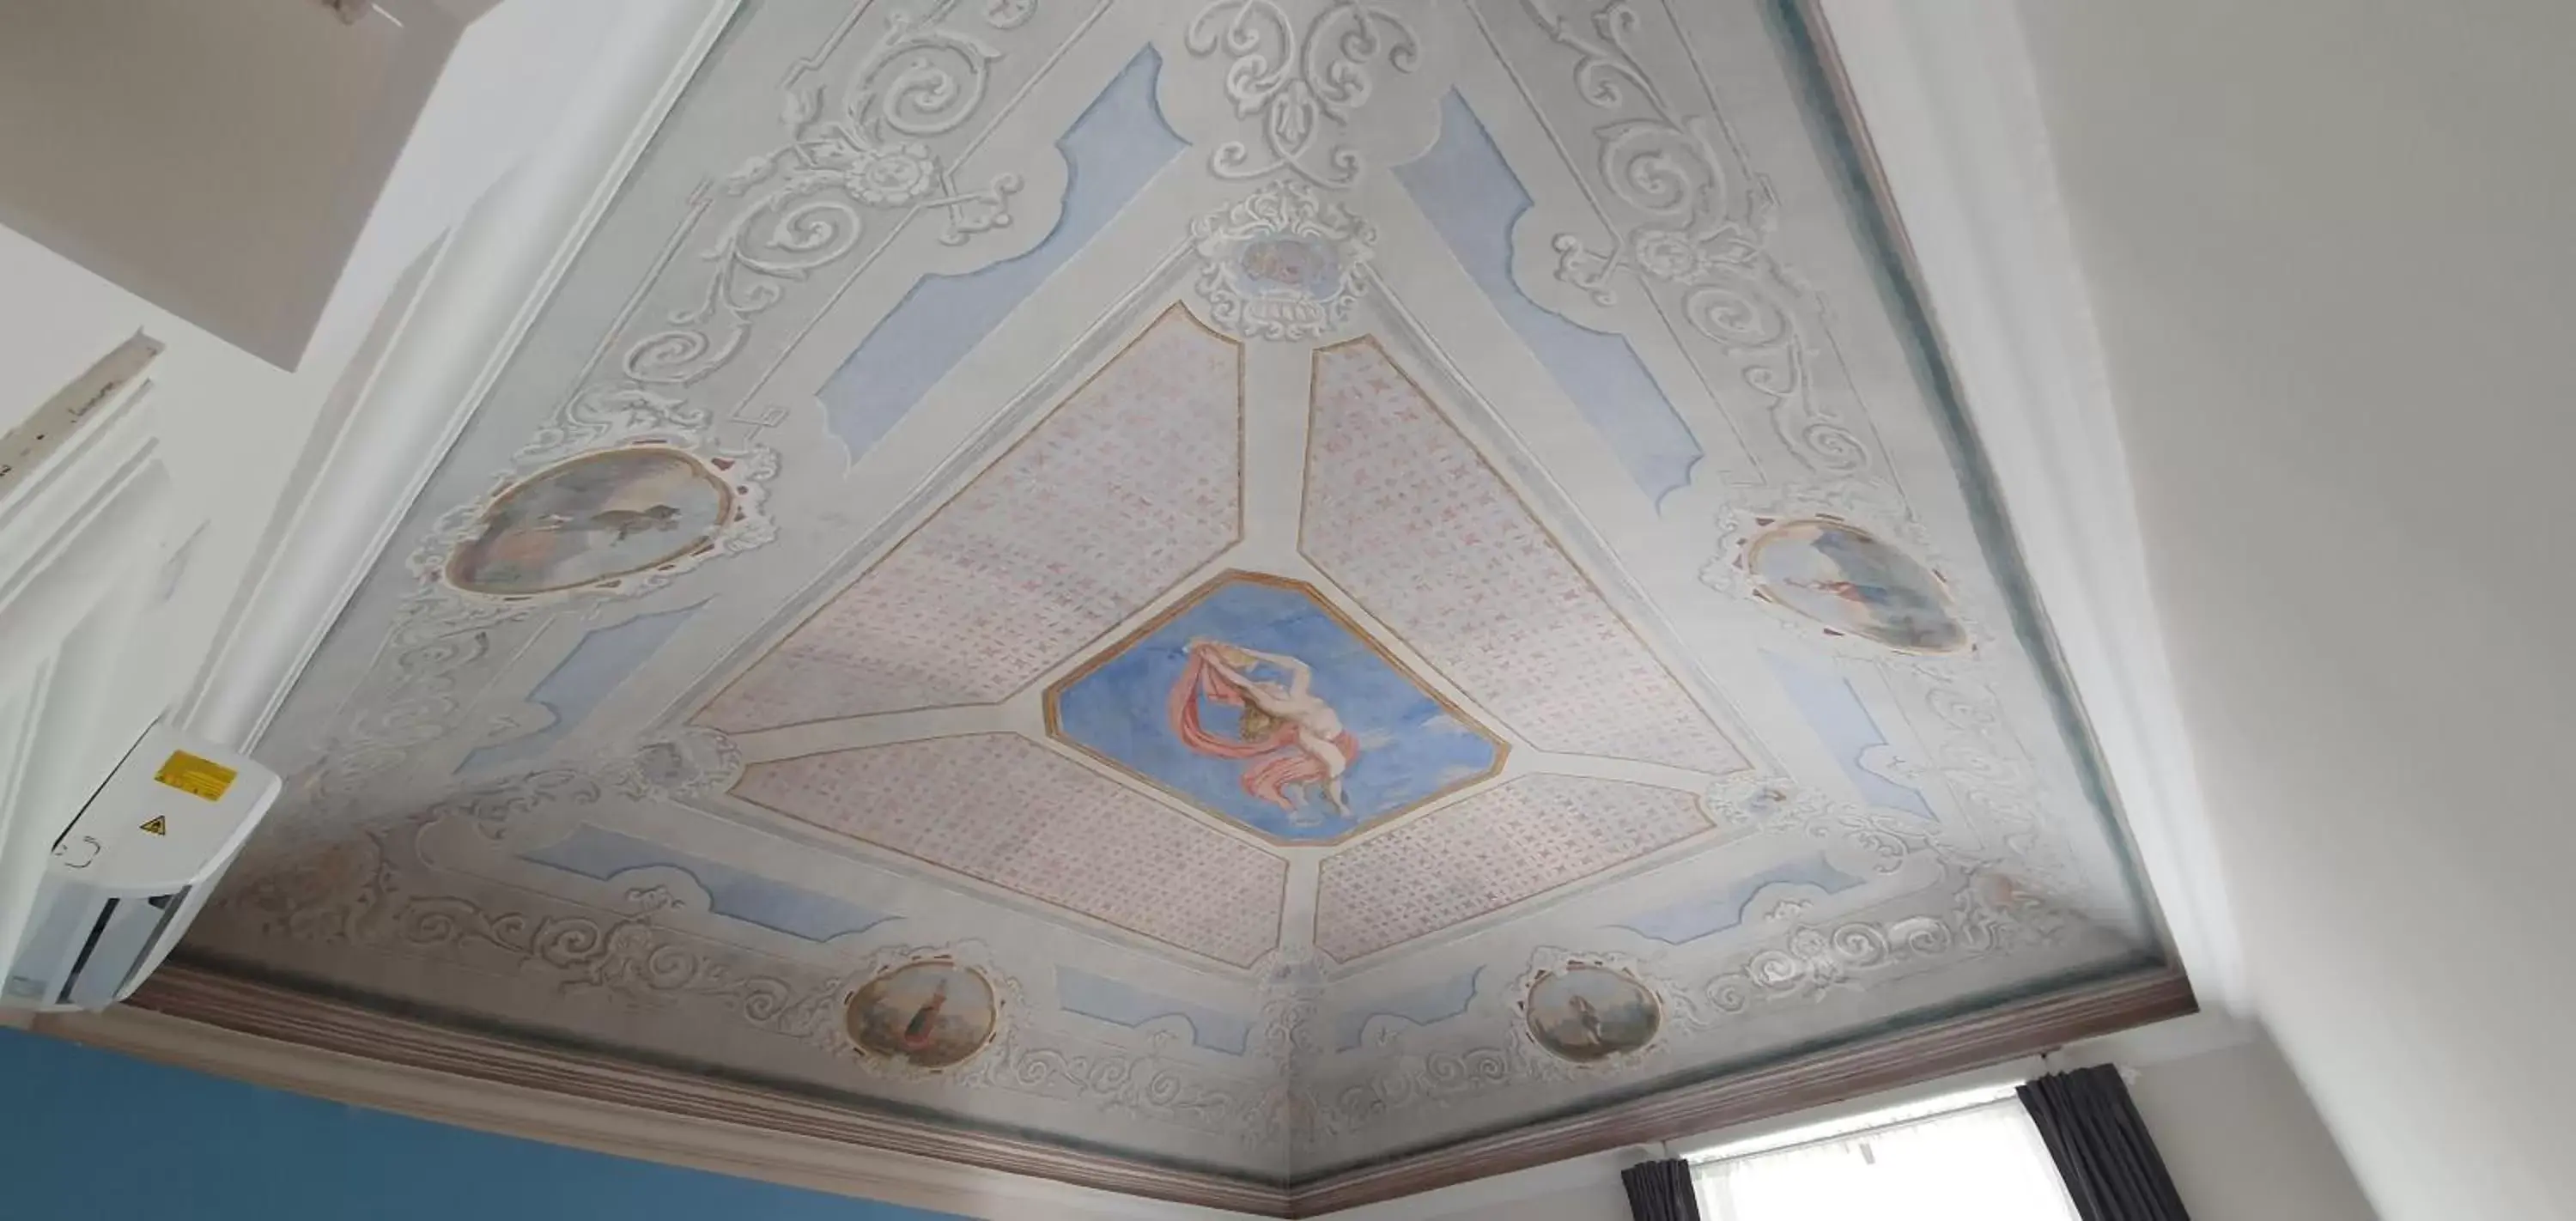 Decorative detail in Palazzo del Verga